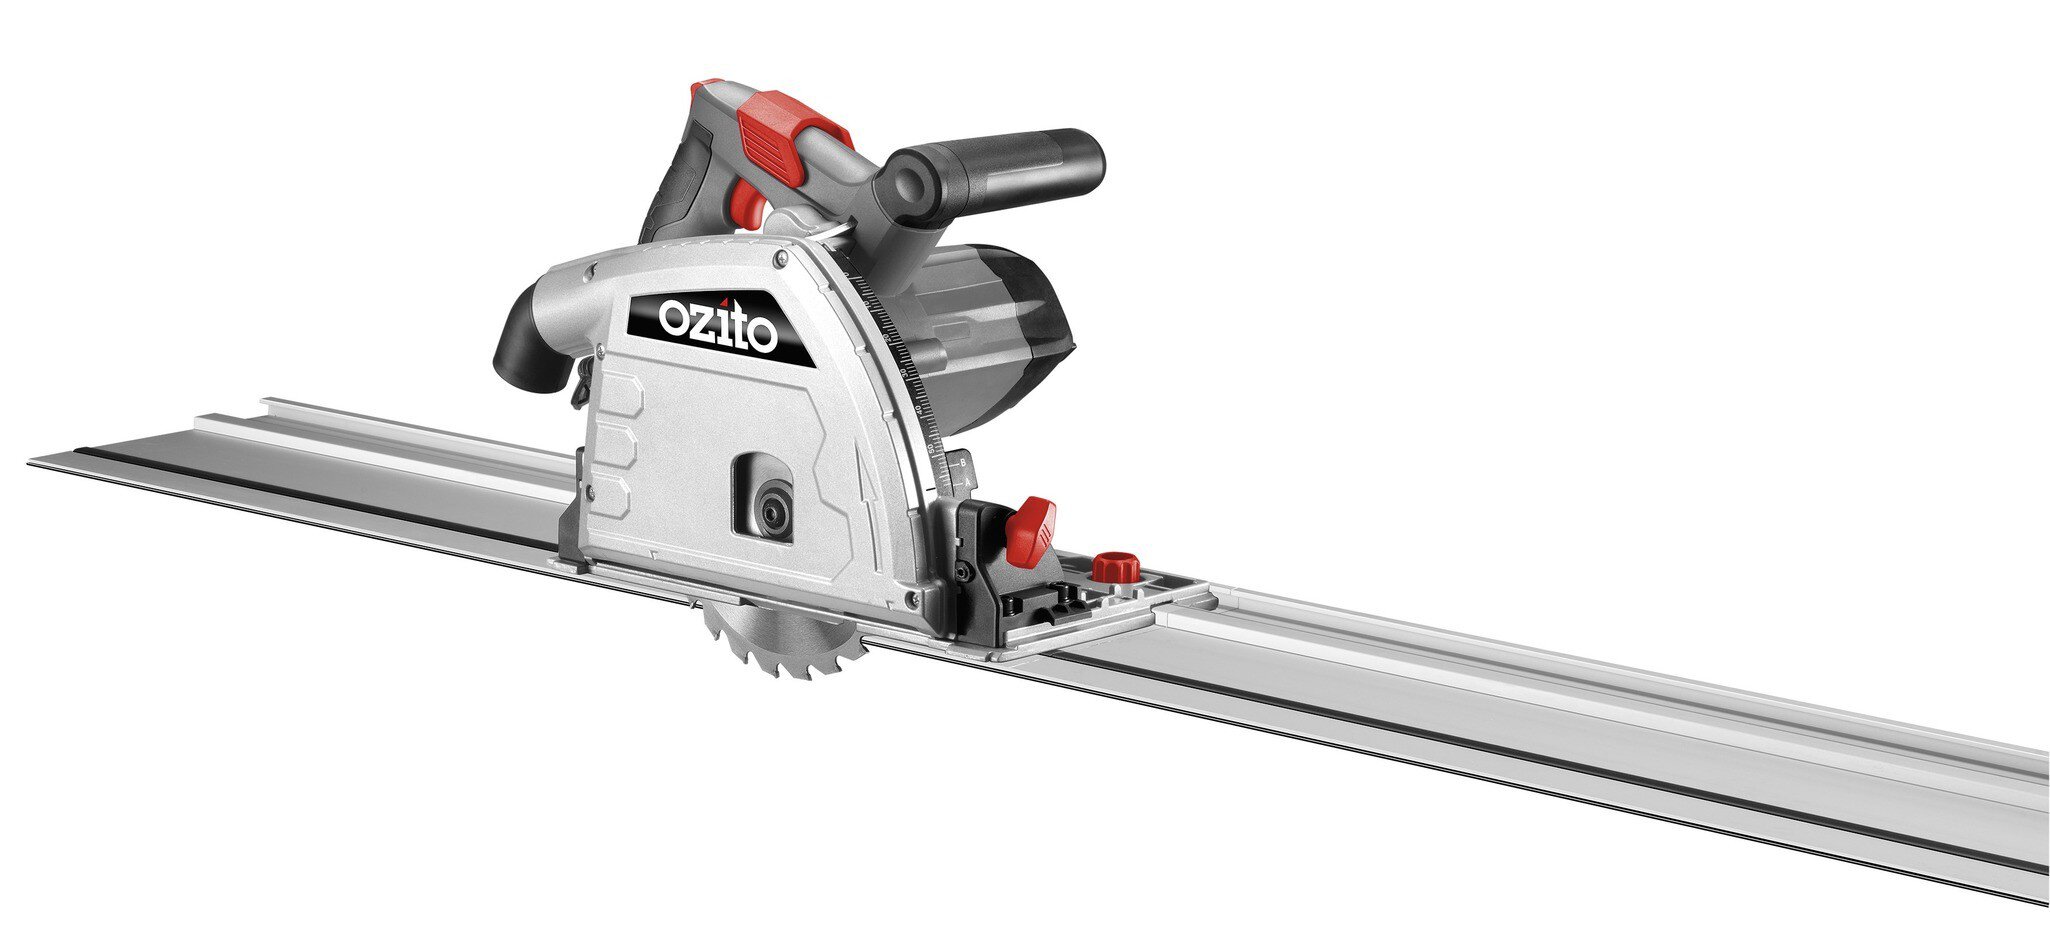 ozito-plunge-cut-saw-4340682-productimage-103